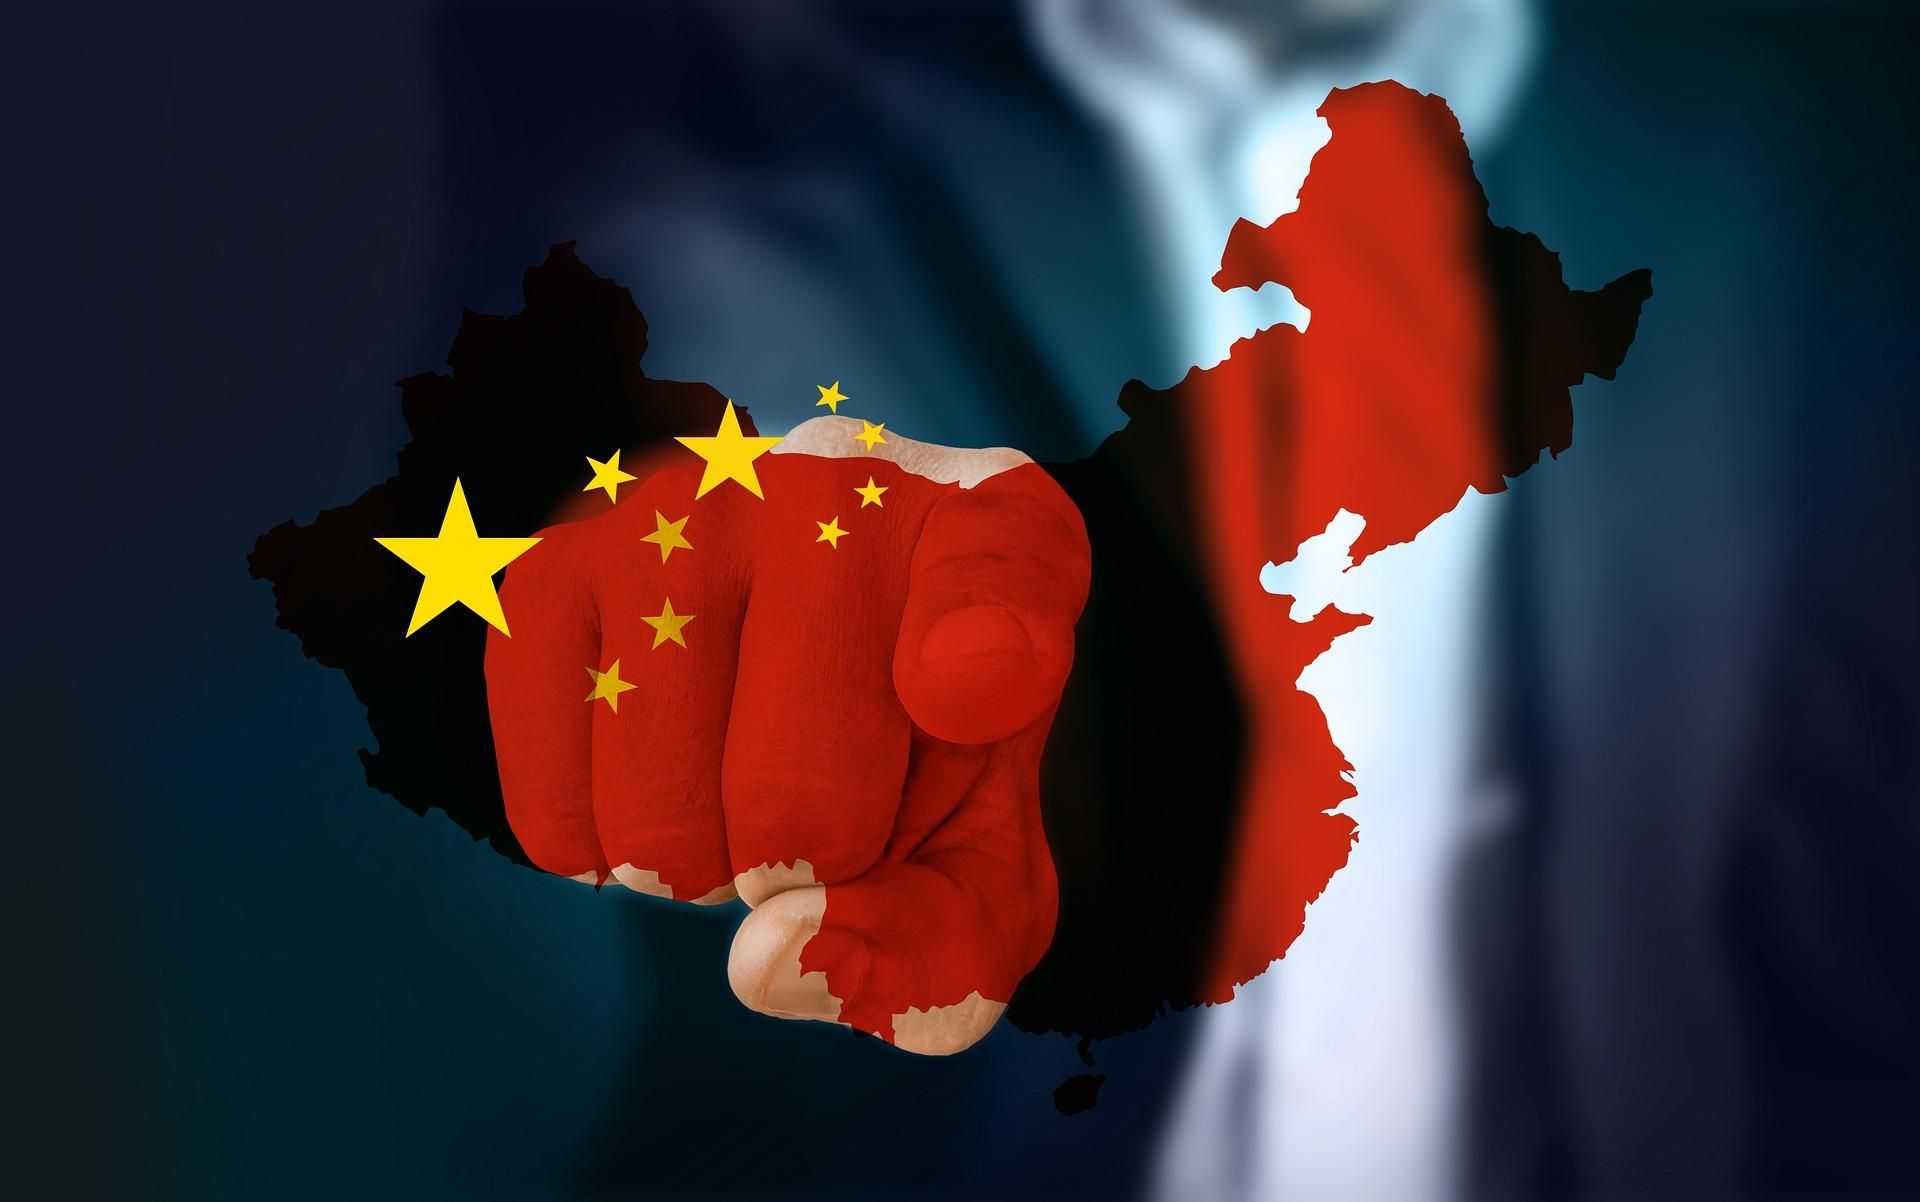 "Общее процветание": какой будет экономическая политика Китая в 2022 году - Экономические новости Украины - Экономика